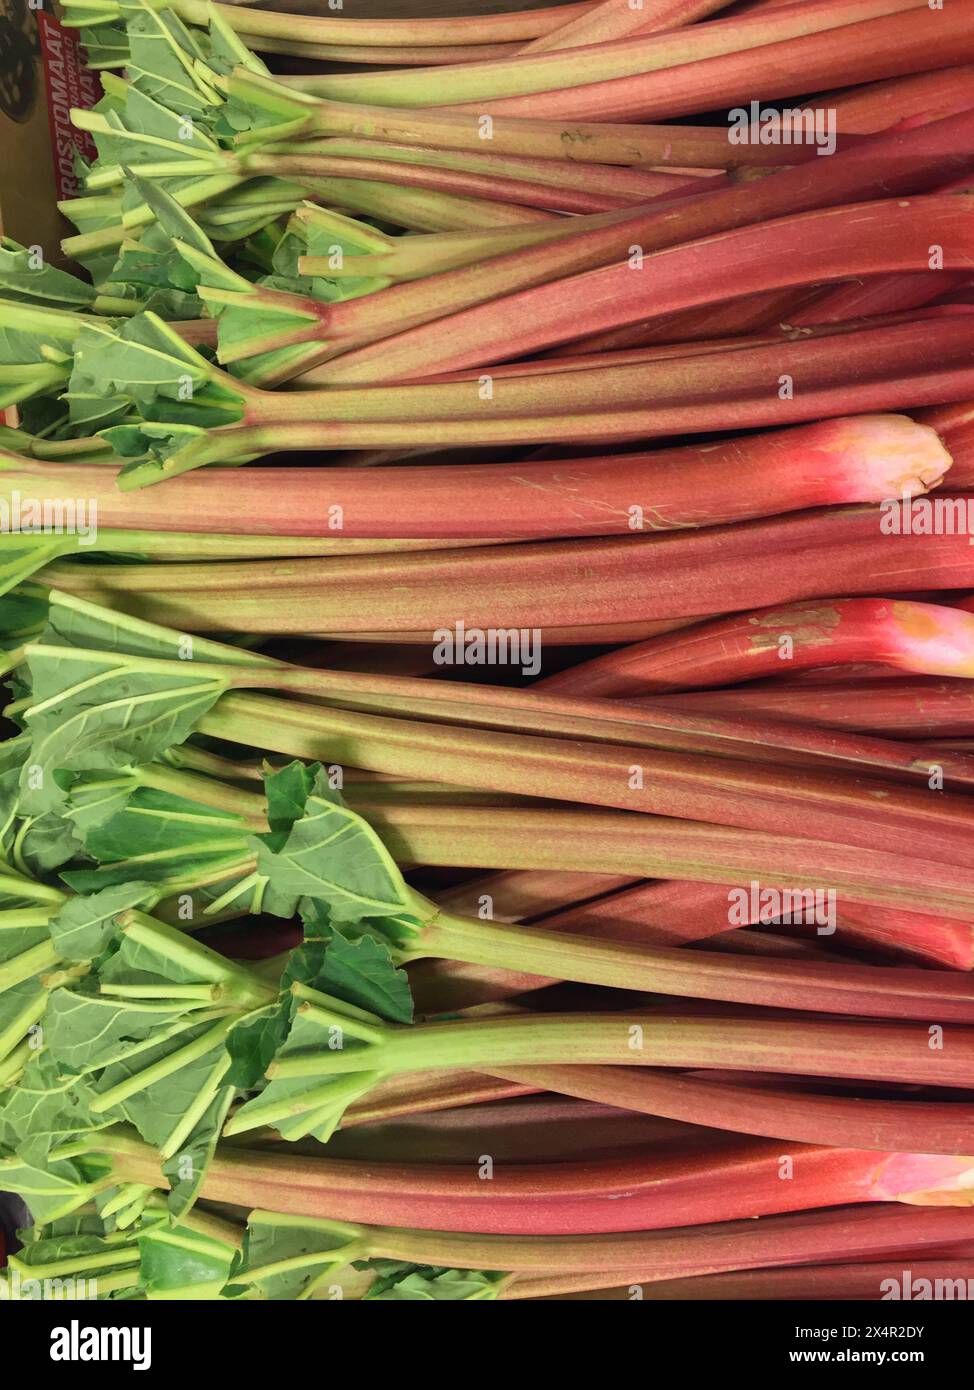 Nahaufnahme eines Haufens ökologisch angebauter roter Rhabarber-Stiele, die im Frühjahr auf dem Bauernmarkt verkauft werden können. Stockfoto